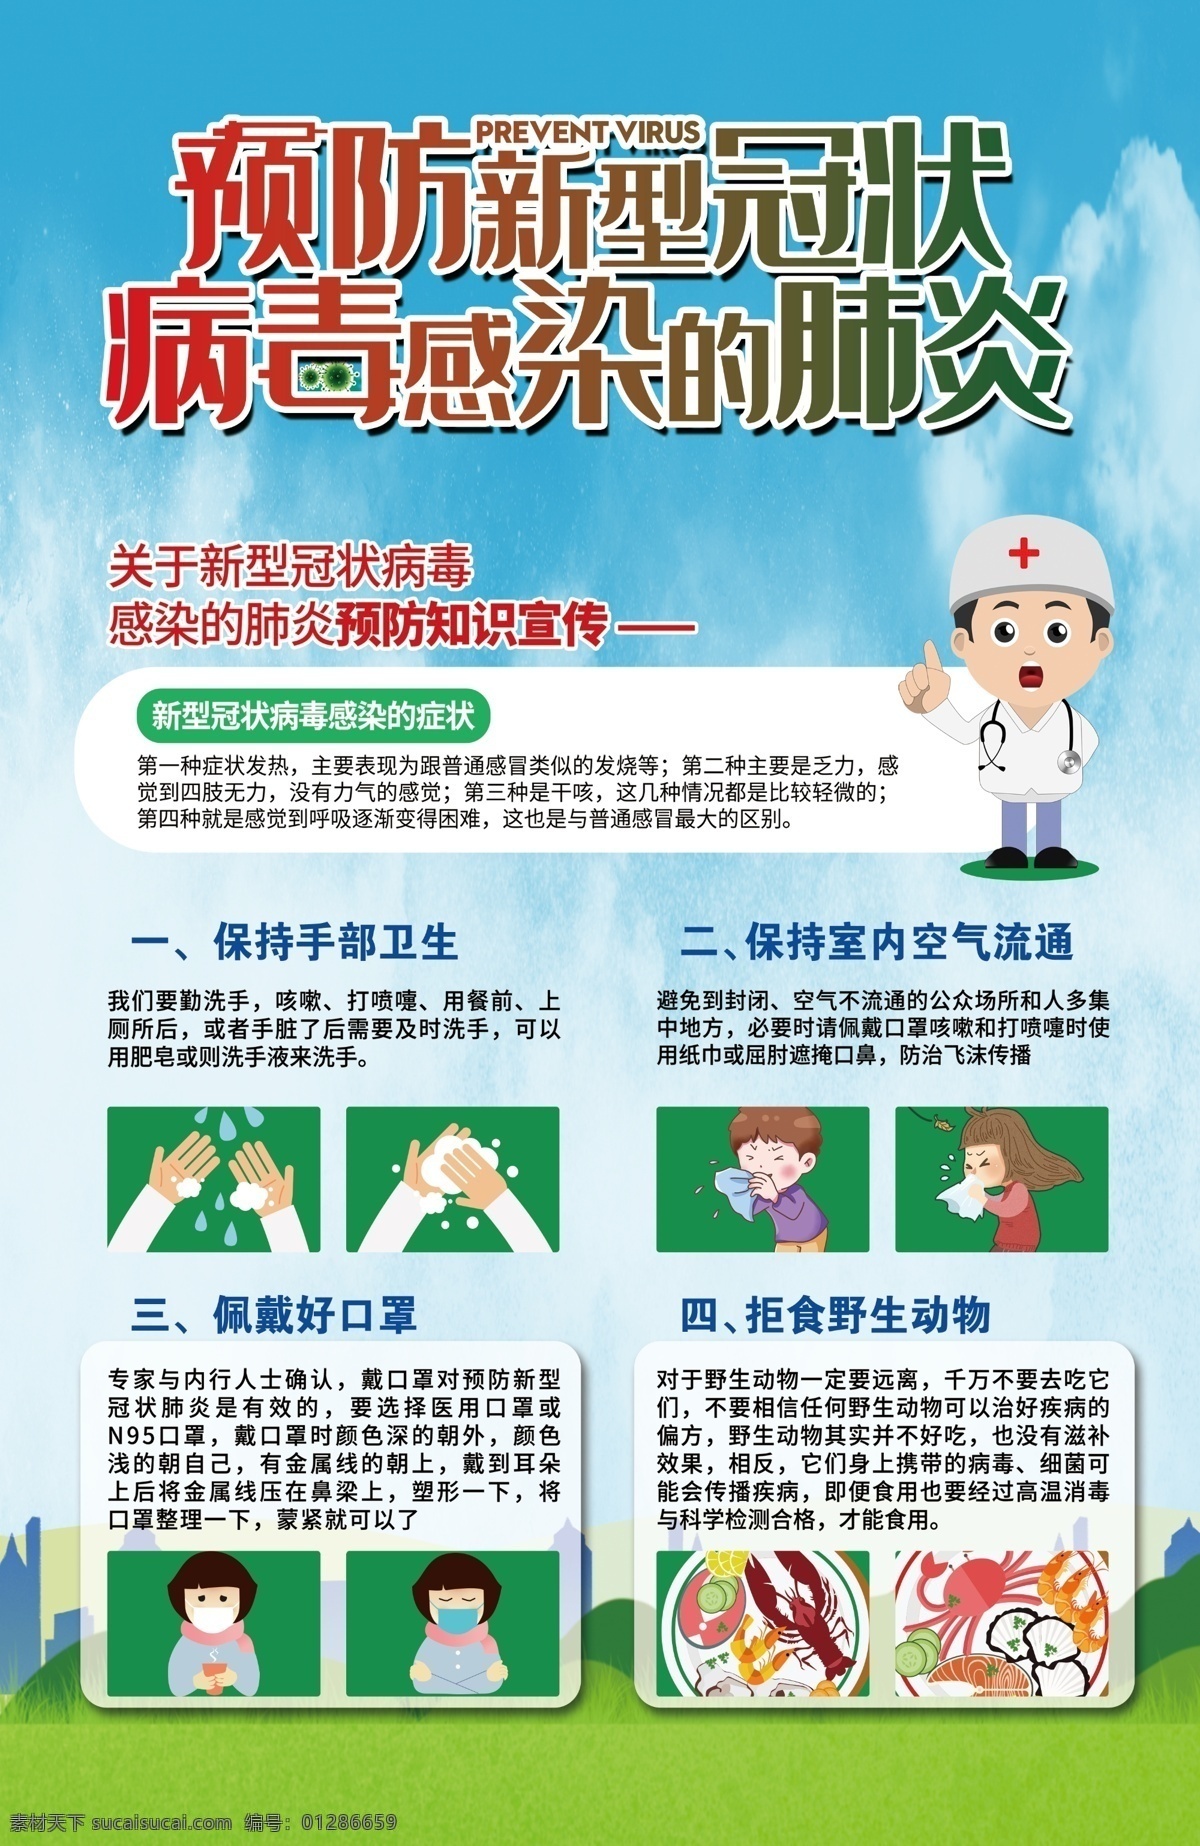 新冠肺炎图片 肺炎 预防 疾病 洗手 勤洗手 海报 学校